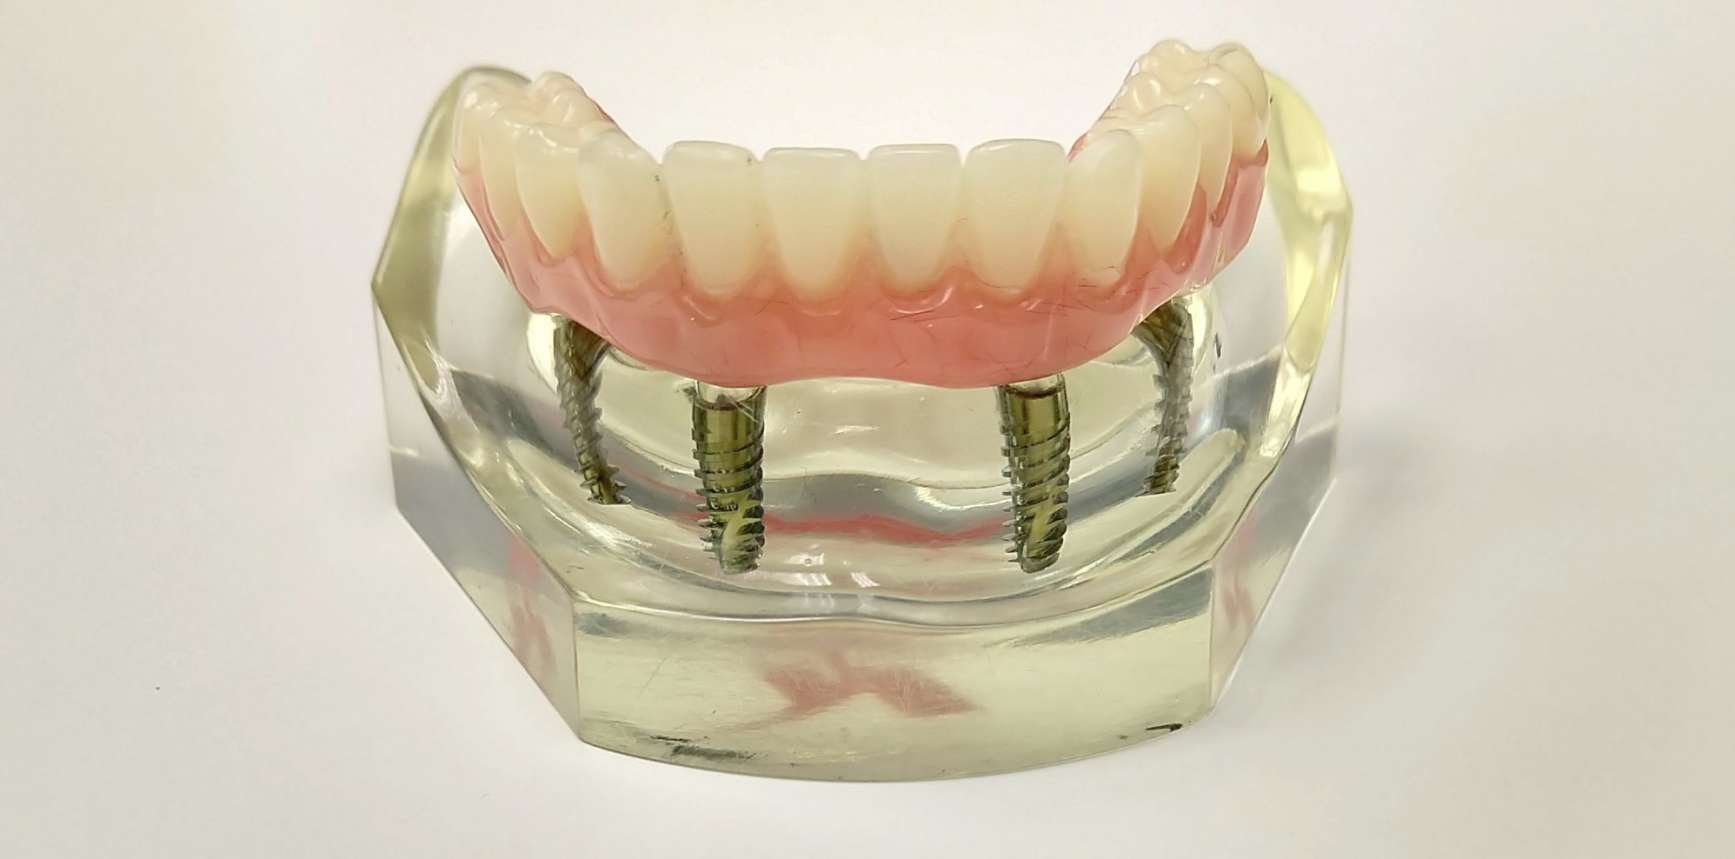 Протез на имплантах при полном отсутствии. Несъемные зубные протезы на 4 имплантах. Несъёмный мостовидный протез челюсти. Протез нижней челюсти на 4 имплантах. Зубной протез верхней челюсти на 4 имплантах.